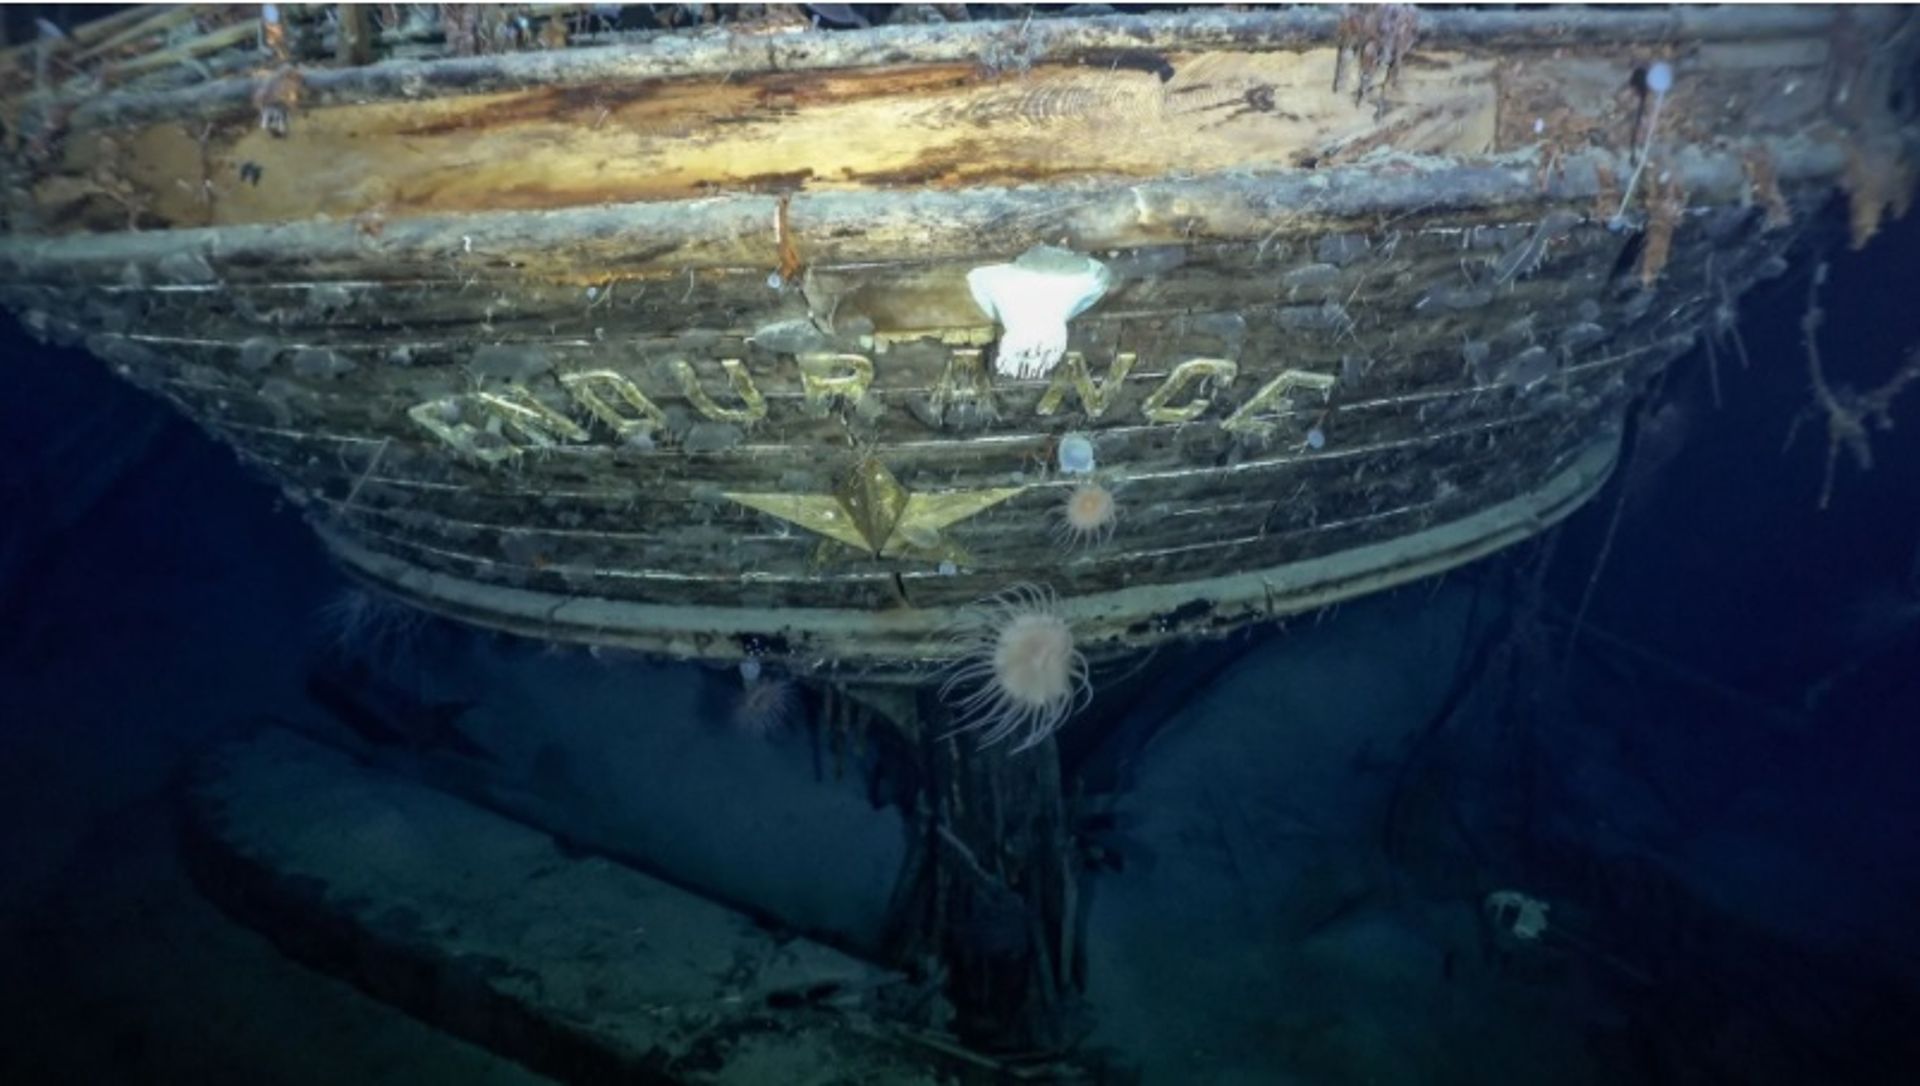 מדענים מצאו את ההריסות של ה- Endurance, ספינת המחקר לאנטרטיקה של ארנסט שקלטון.

באדיבות Endurance22 ו-Falklands Maritime Heritage Trust